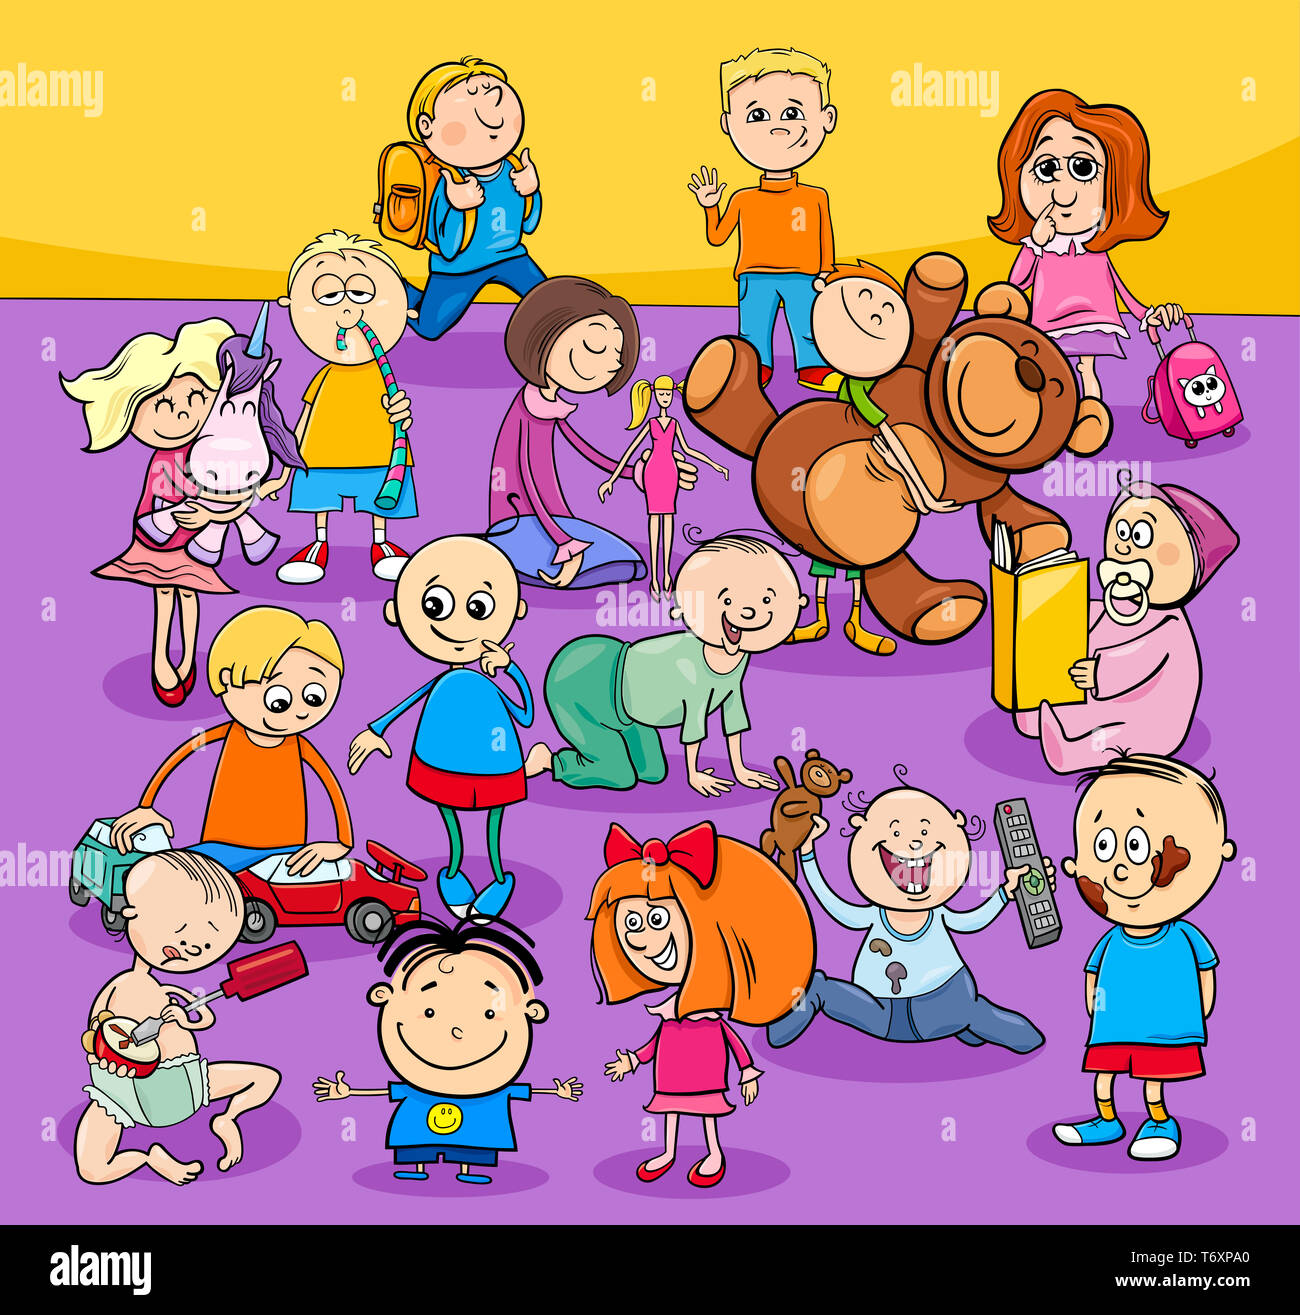 Bebes Y Ninos Del Grupo De Personajes De Dibujos Animados Fotografia De Stock Alamy